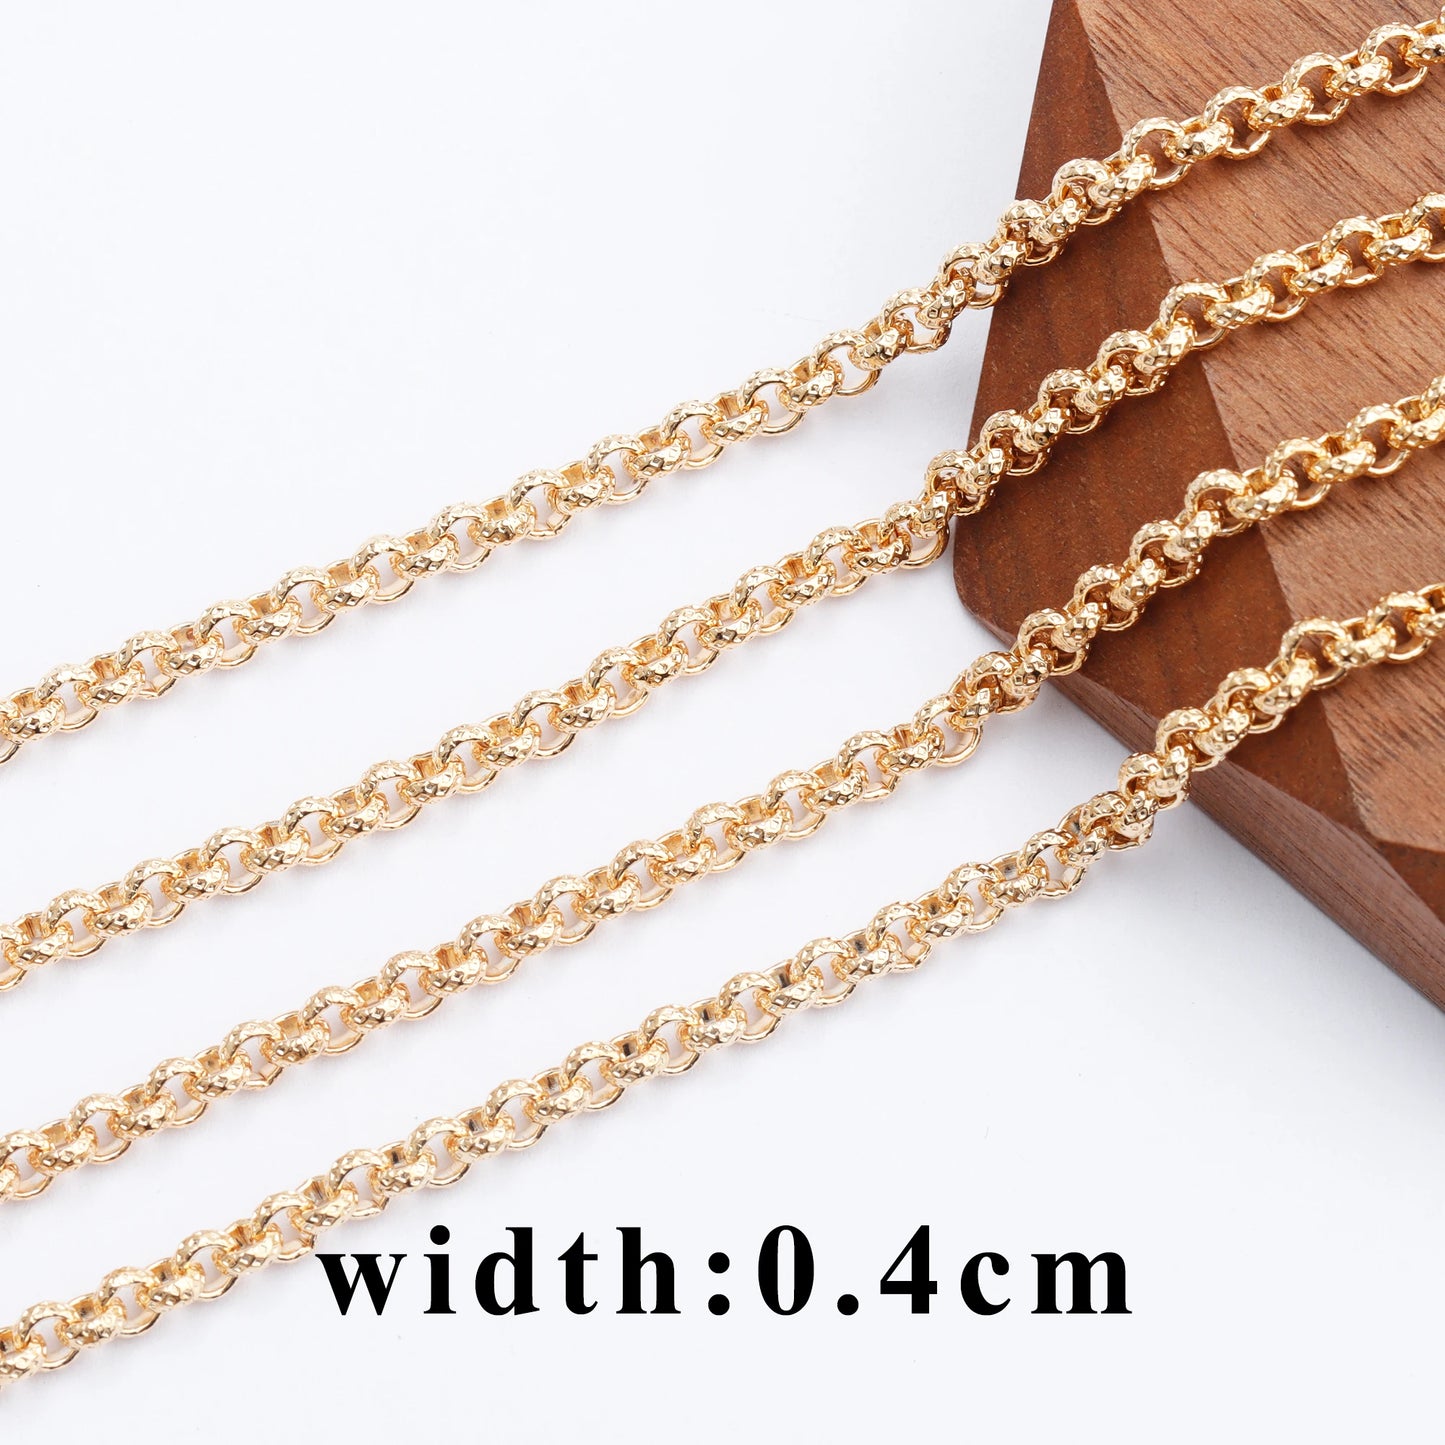 GUFEATHER C118, accessoires de bijoux, pass REACH, sans nickel, chaîne de bricolage, plaqué rhodium or 18 carats, cuivre, collier de bracelet à faire soi-même, 1 m/lot 